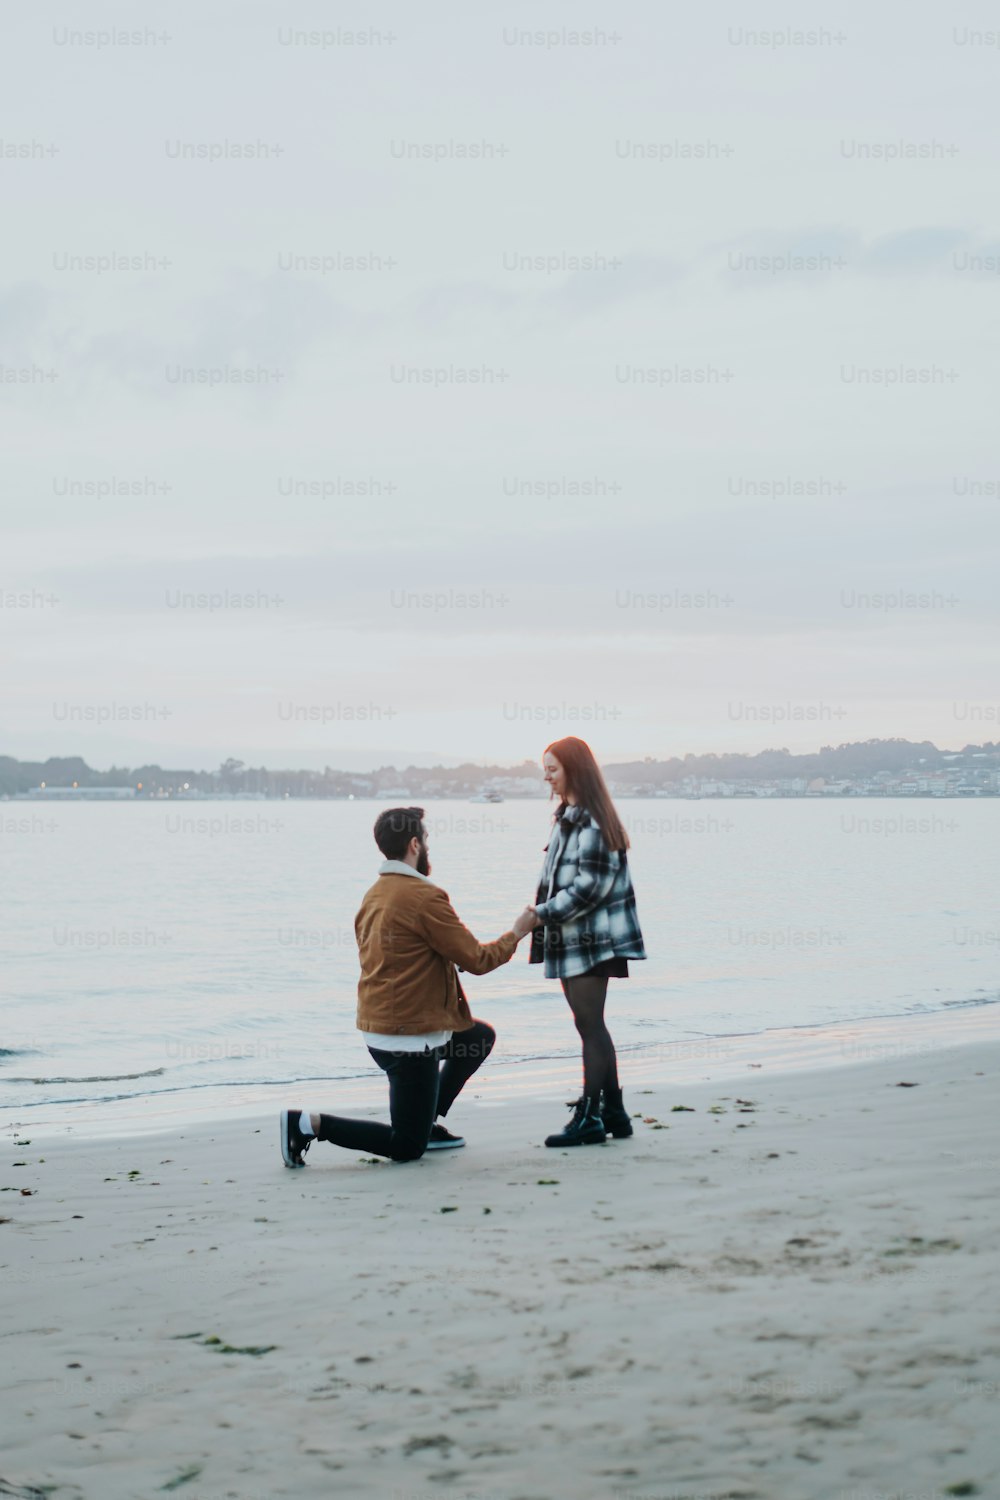 Un hombre arrodillado junto a una mujer en una playa